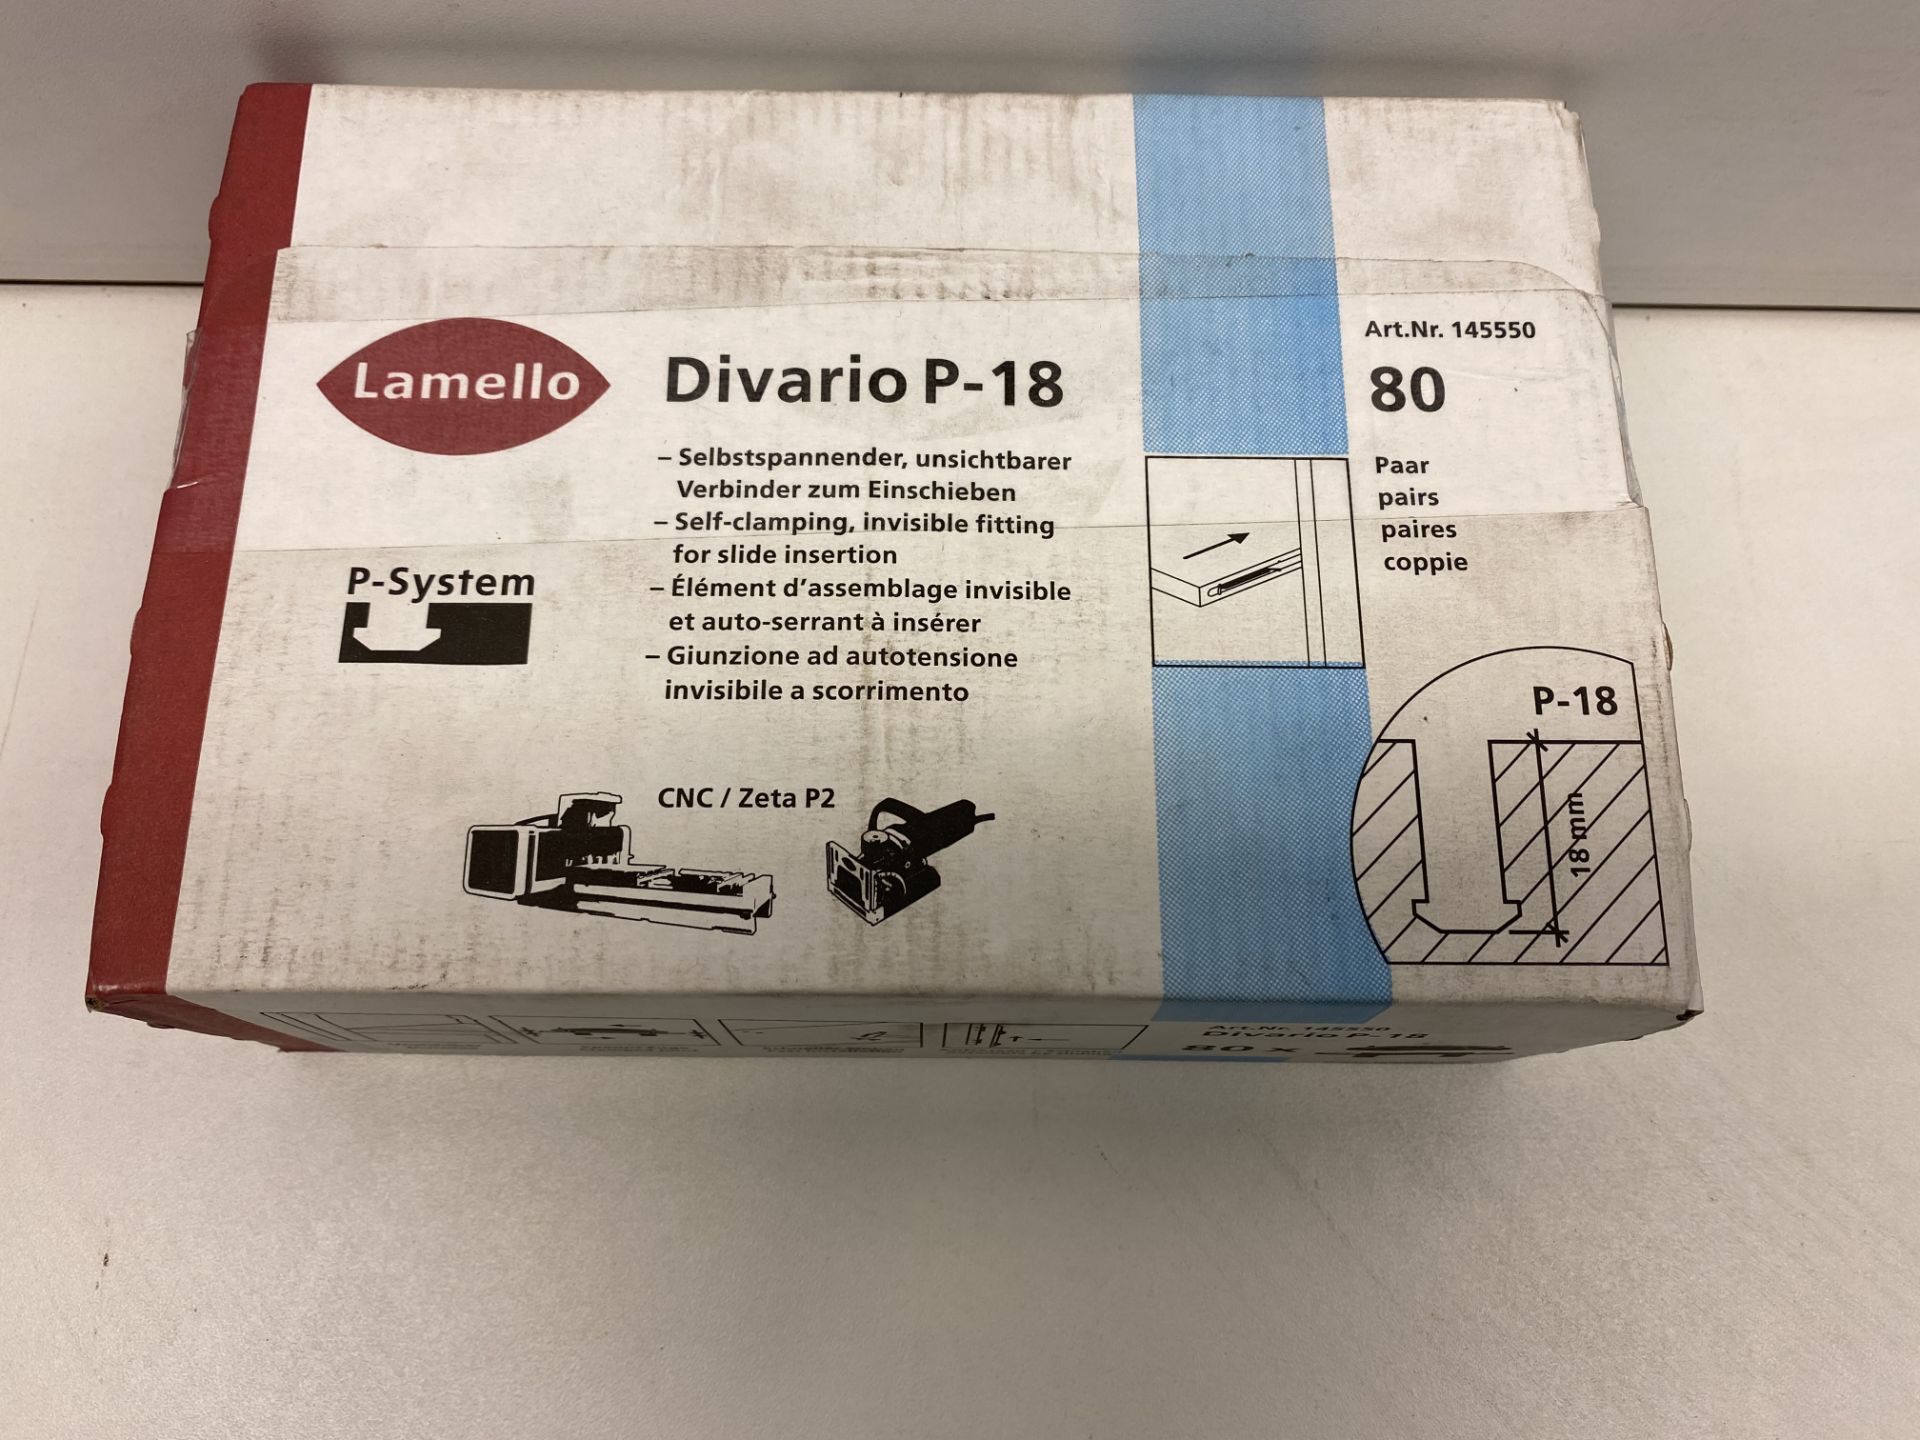 2 x Boxes Of Lamello Divario P-18 connectors (Boxes Of 80) Blue - Image 2 of 5